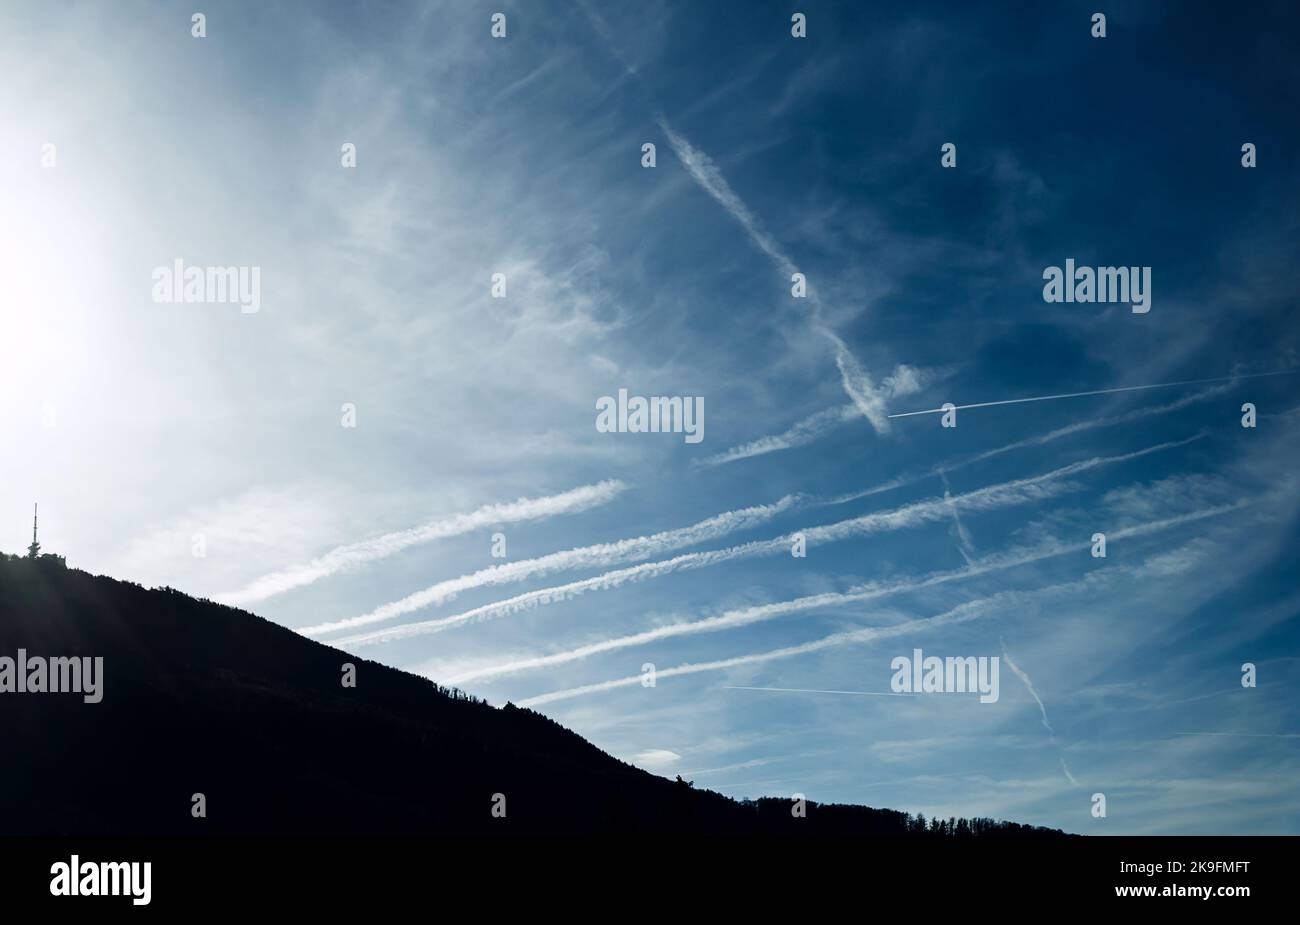 Un avion de ligne massif contrails, certains nouveaux, certains vieux, dans le ciel au-dessus de Gaisberg, une montagne près de la ville de Salzbourg, Autriche, Europe. Pollution de l'air. Banque D'Images